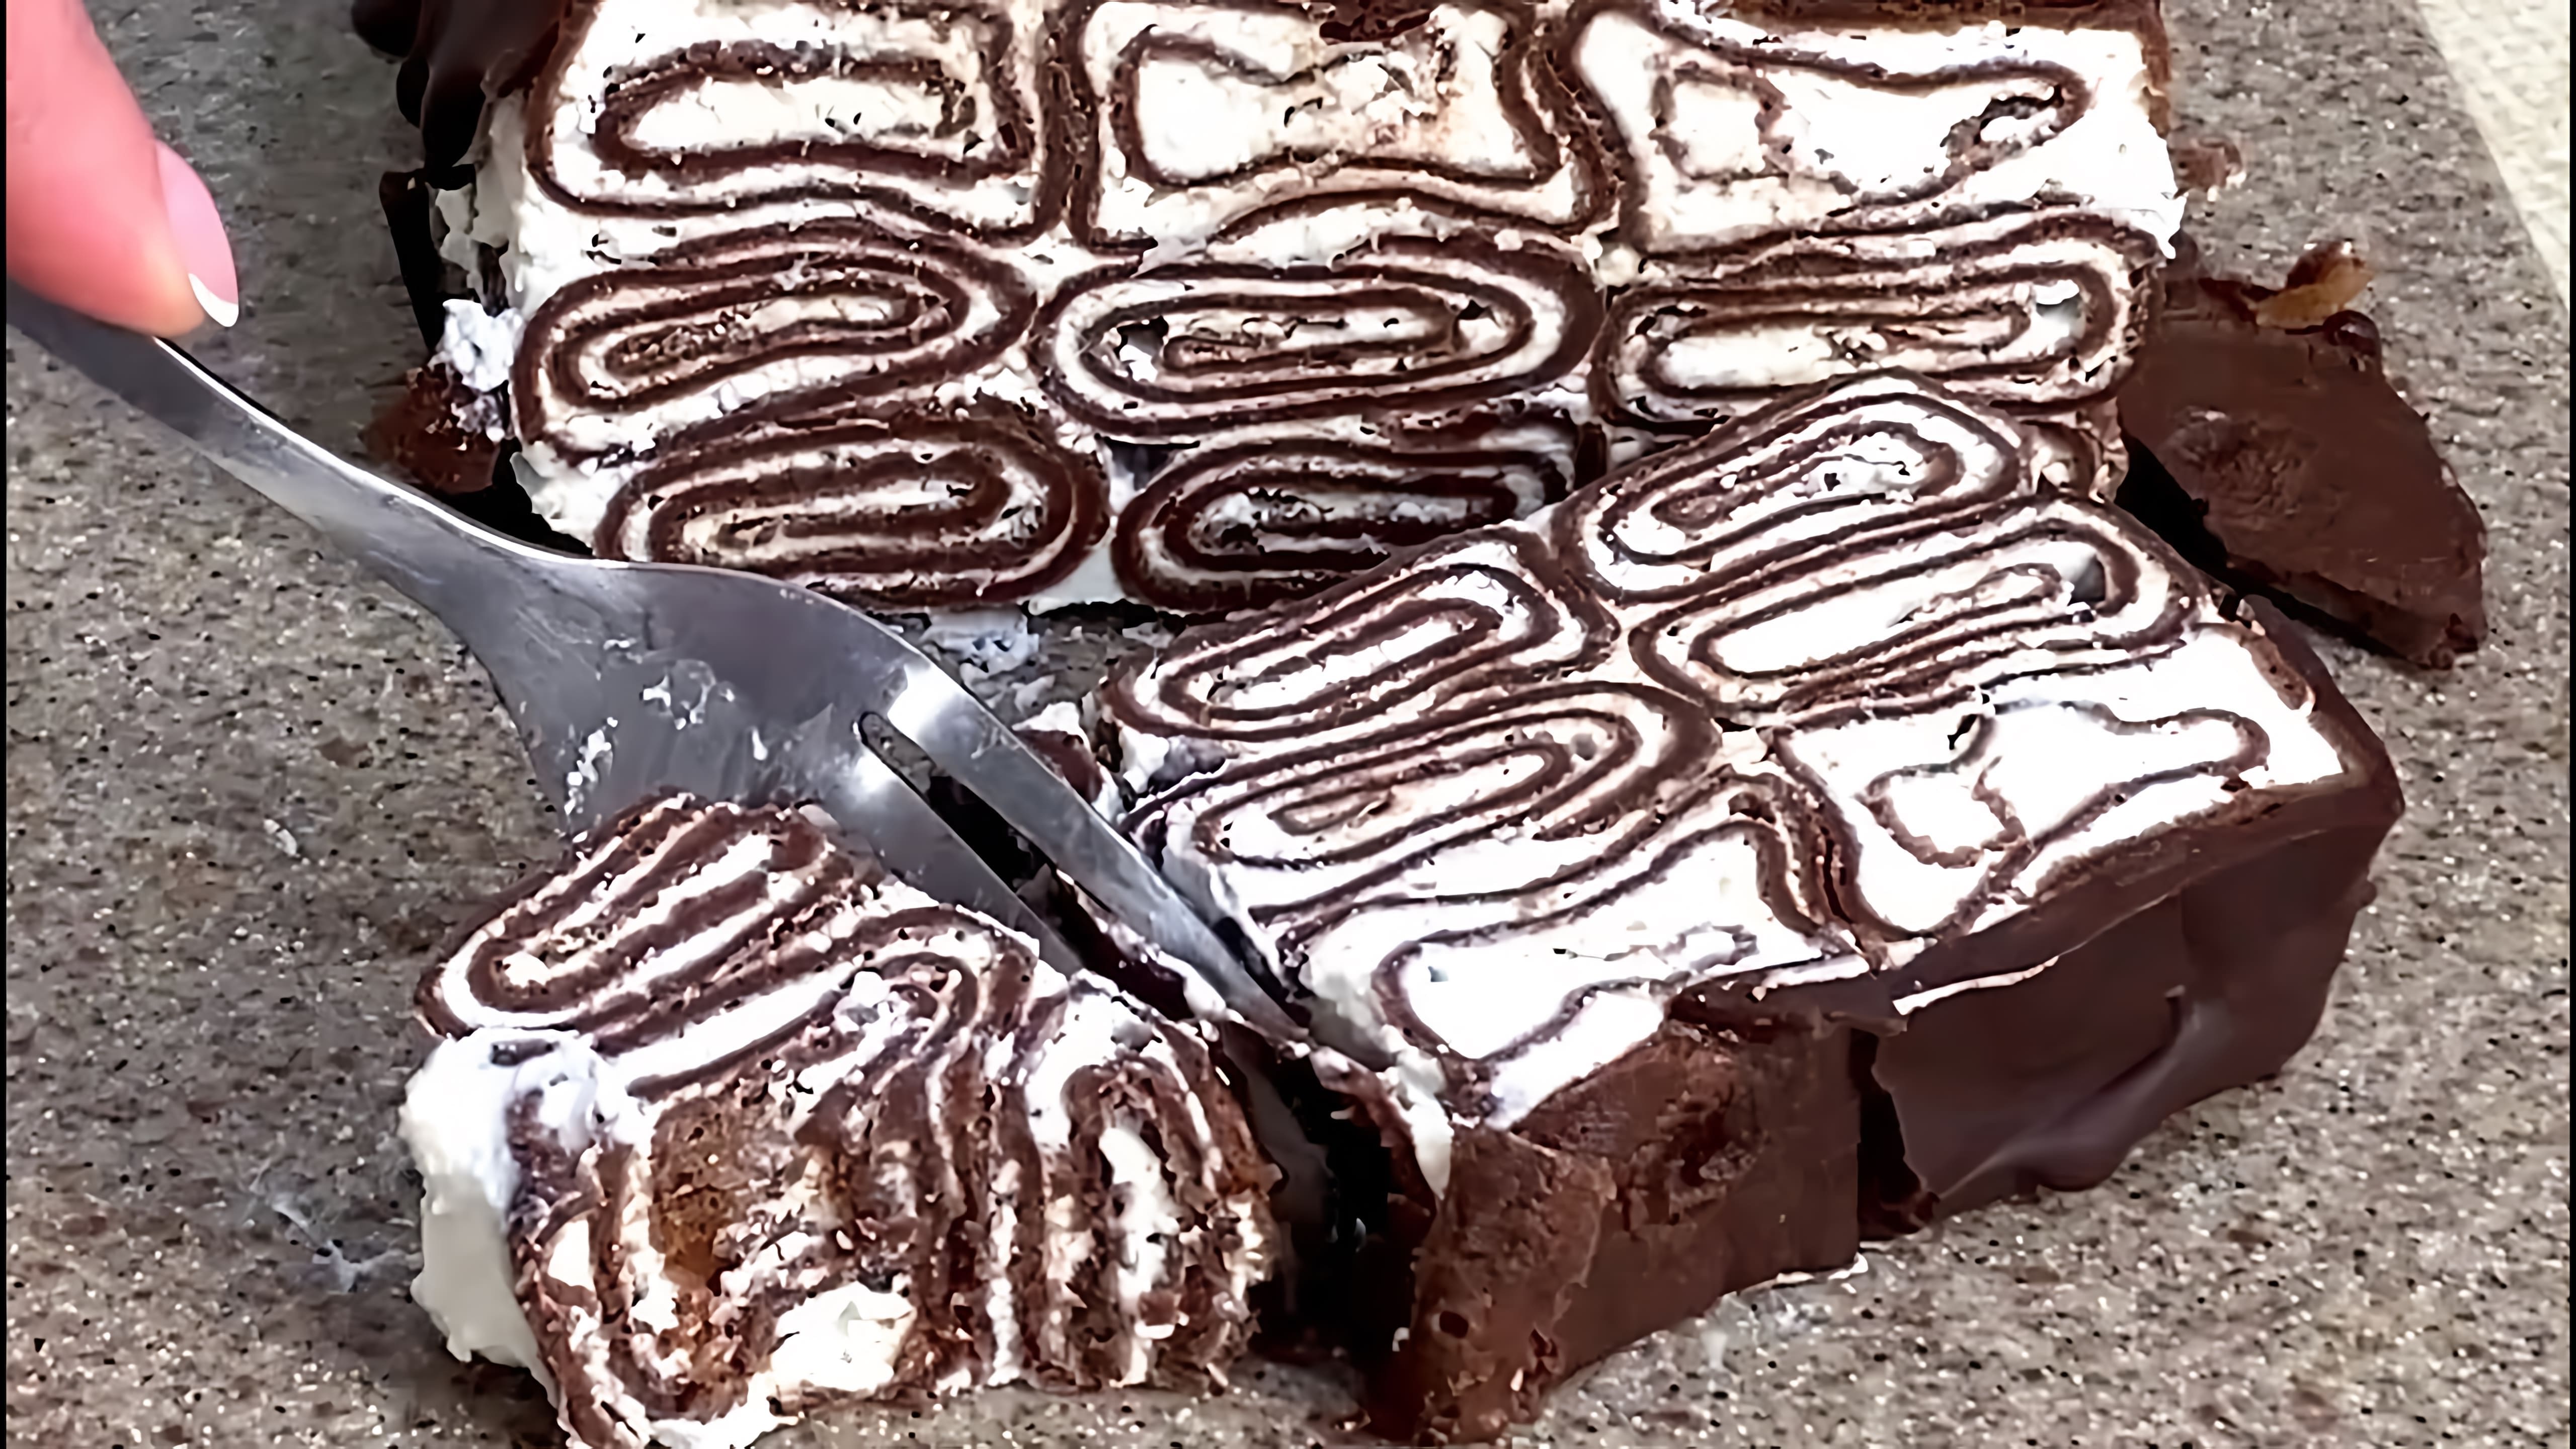 шоколадныйторт#тортизблинов#рецептыблинчиков Шоколадный торт приготовила из блинчиков. Тортик получился... 